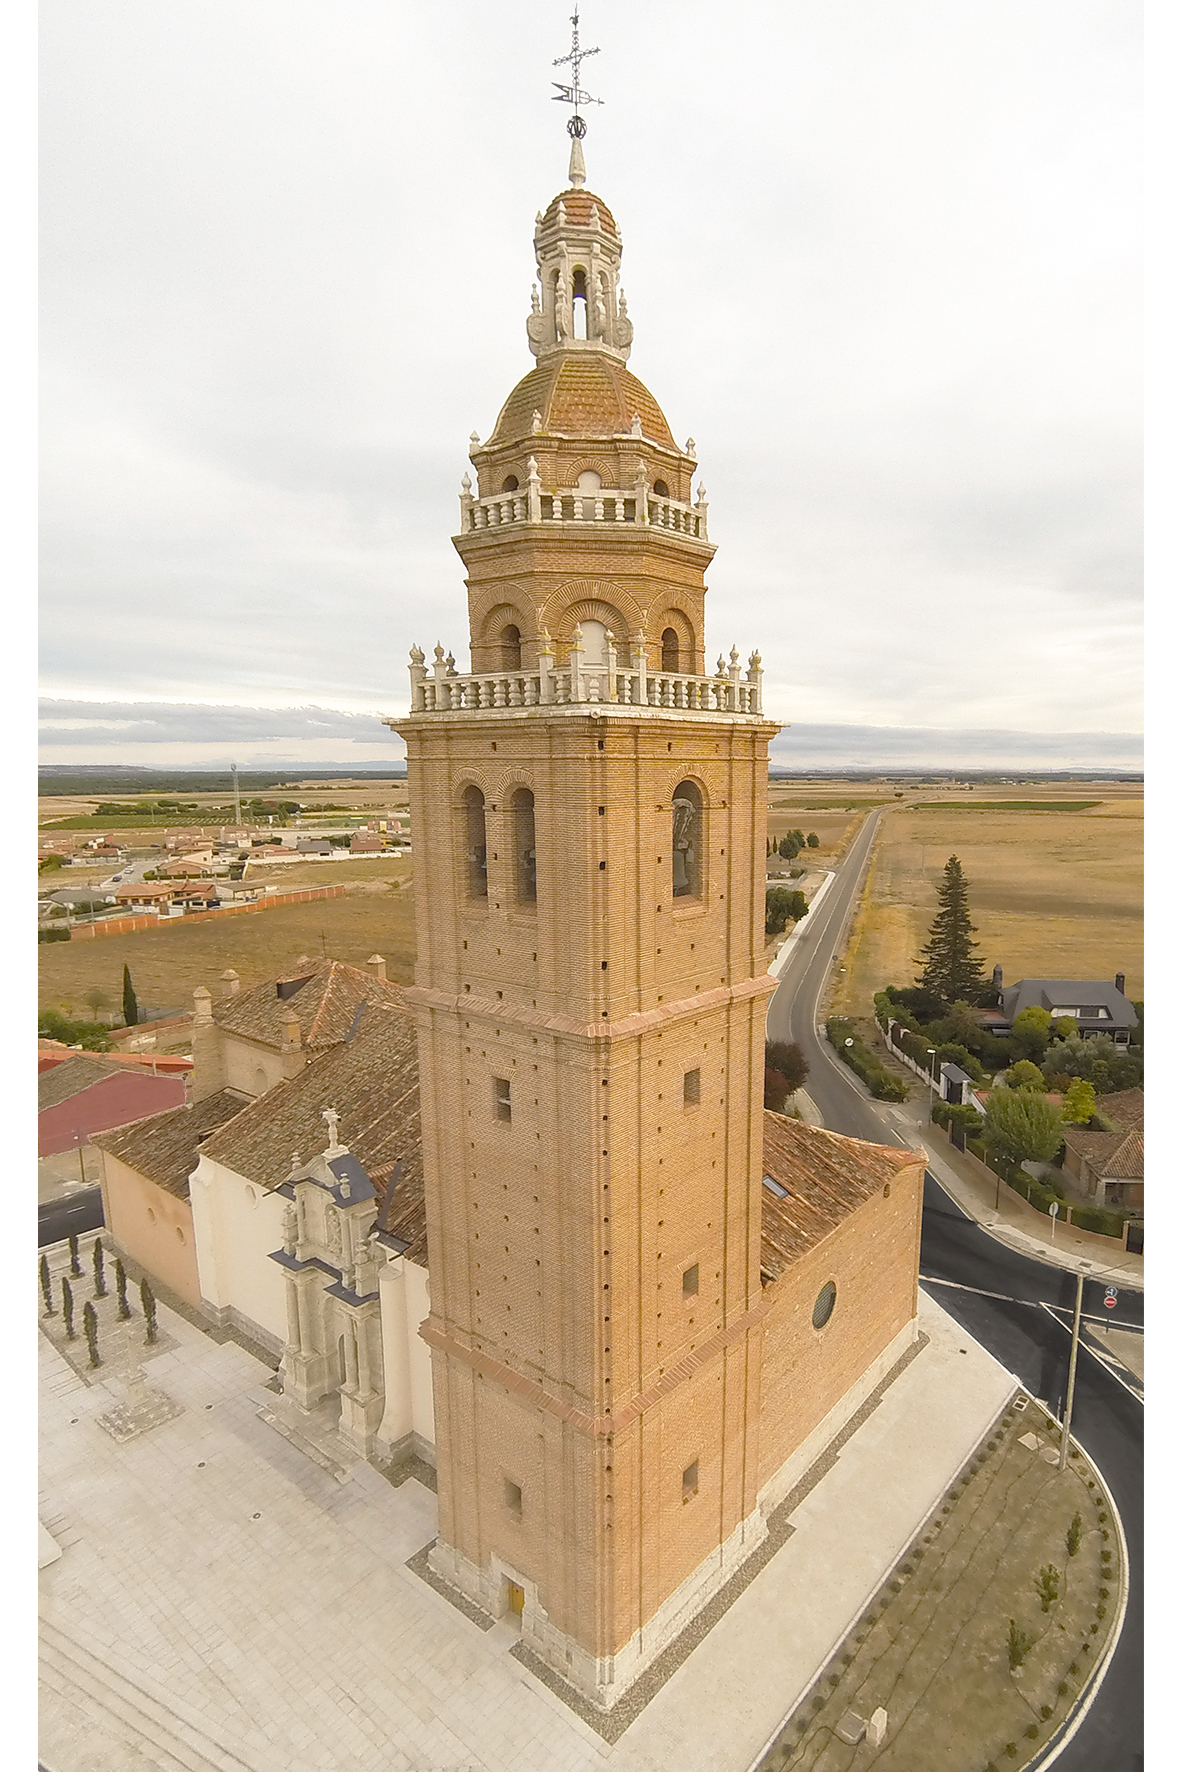 Tower of Santa Maria Magdalena's church